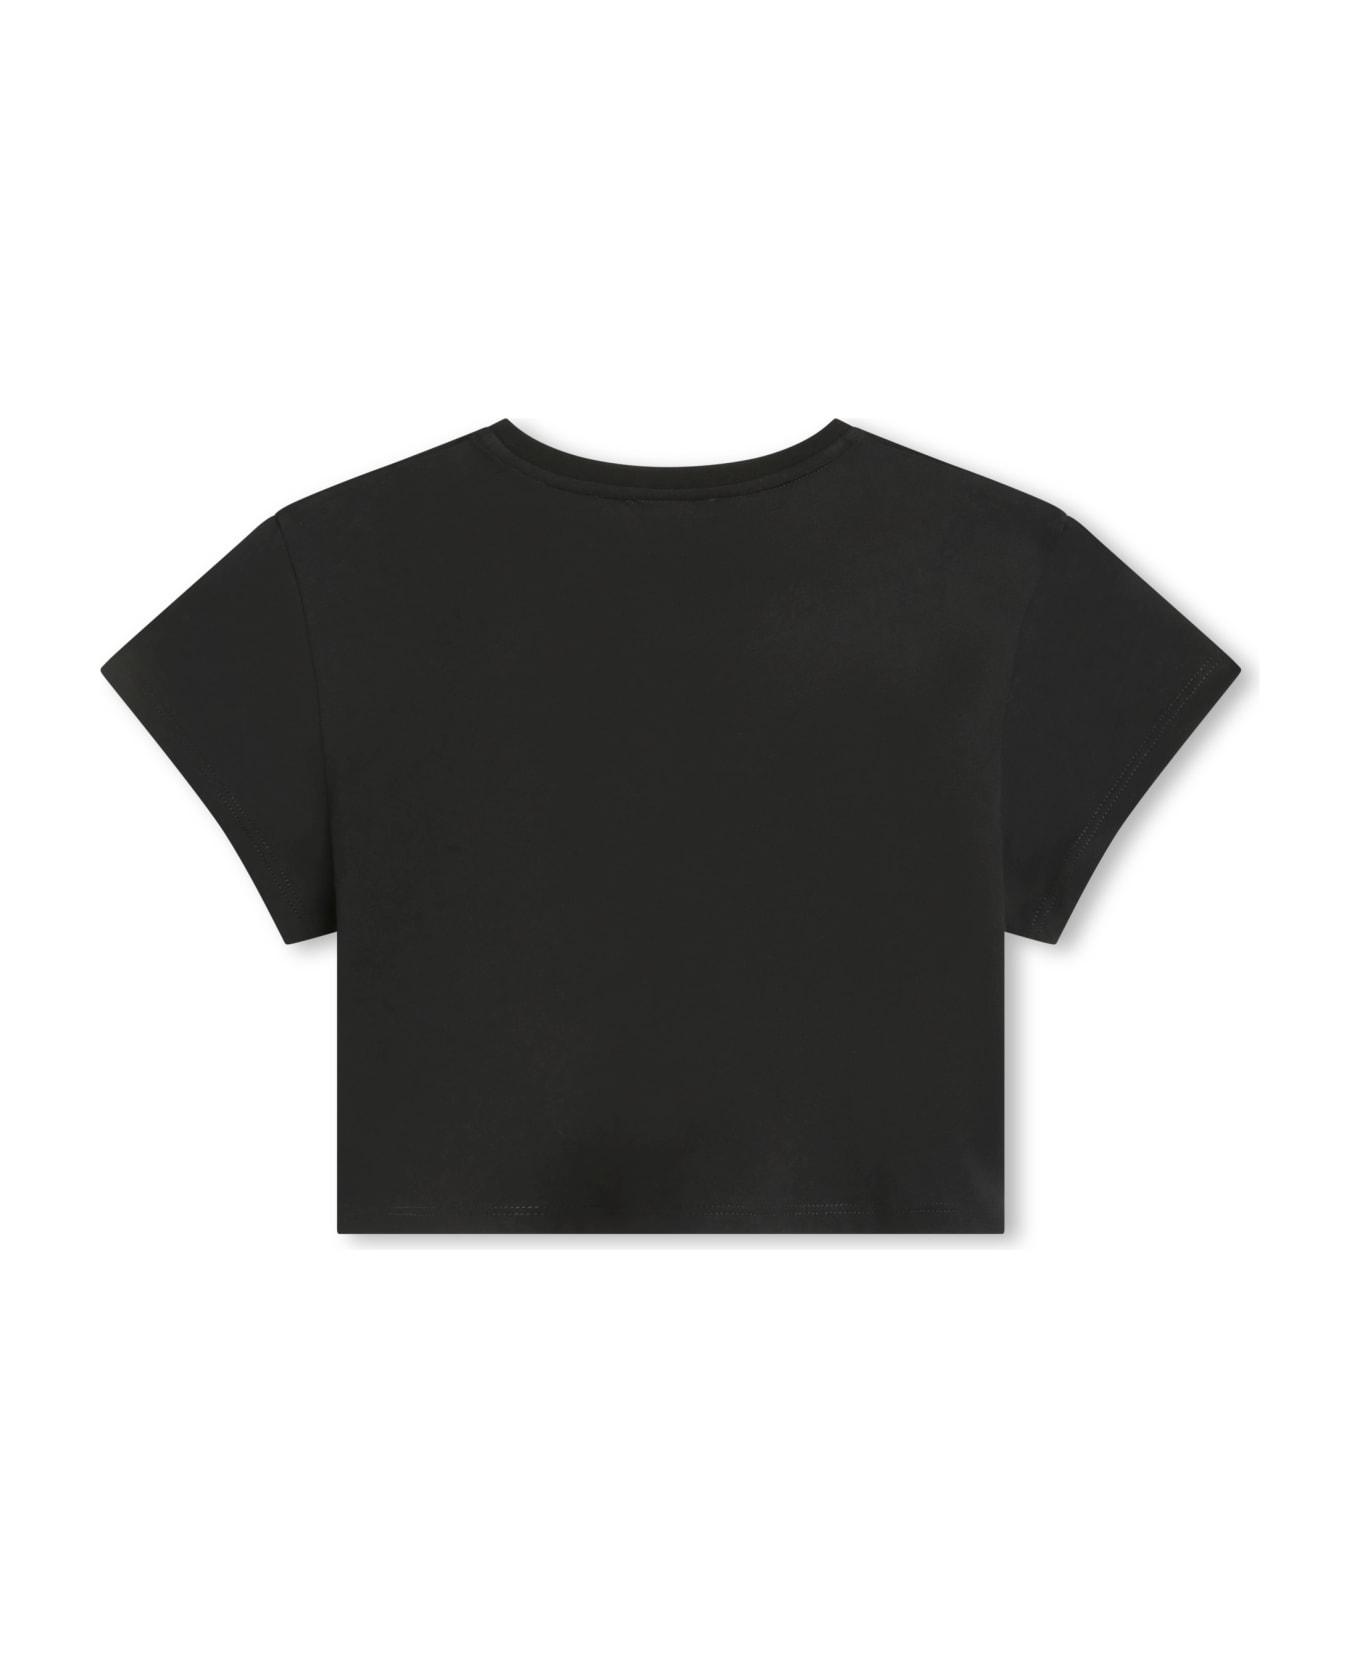 Chloé Studded T-shirt - Black